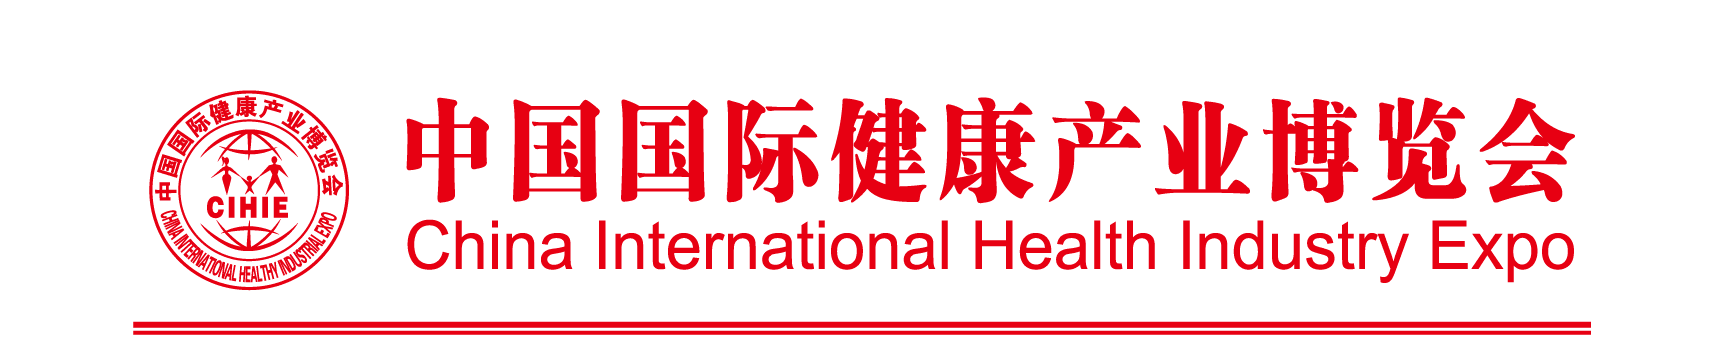 2018第二十五届成都大健康产业博览会